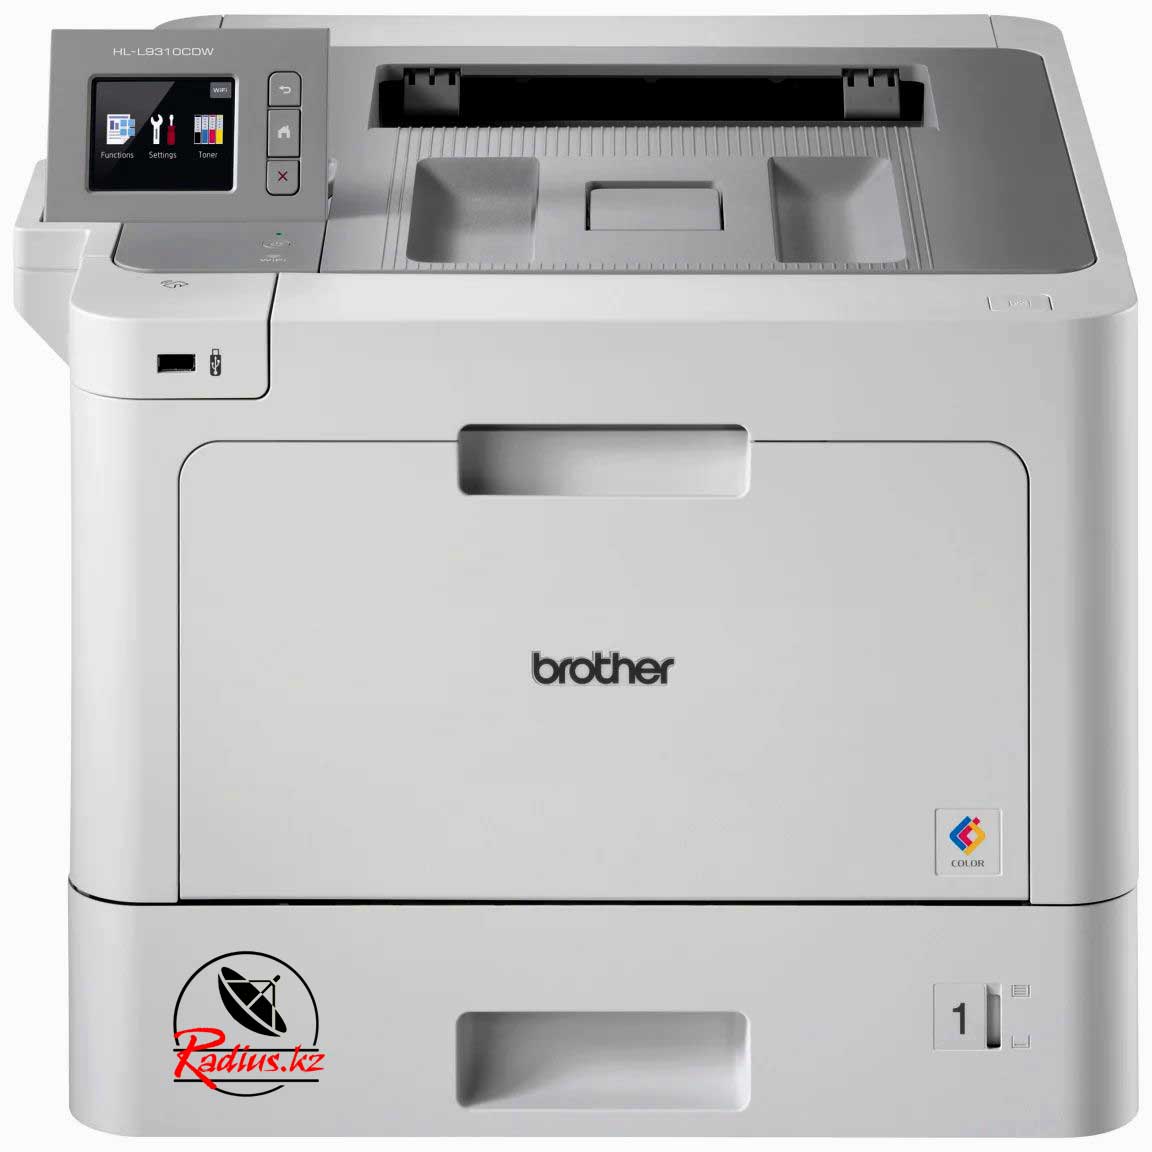 Отзыв на Brother HL-L9310CDW лазерный цветной принтер для офиса